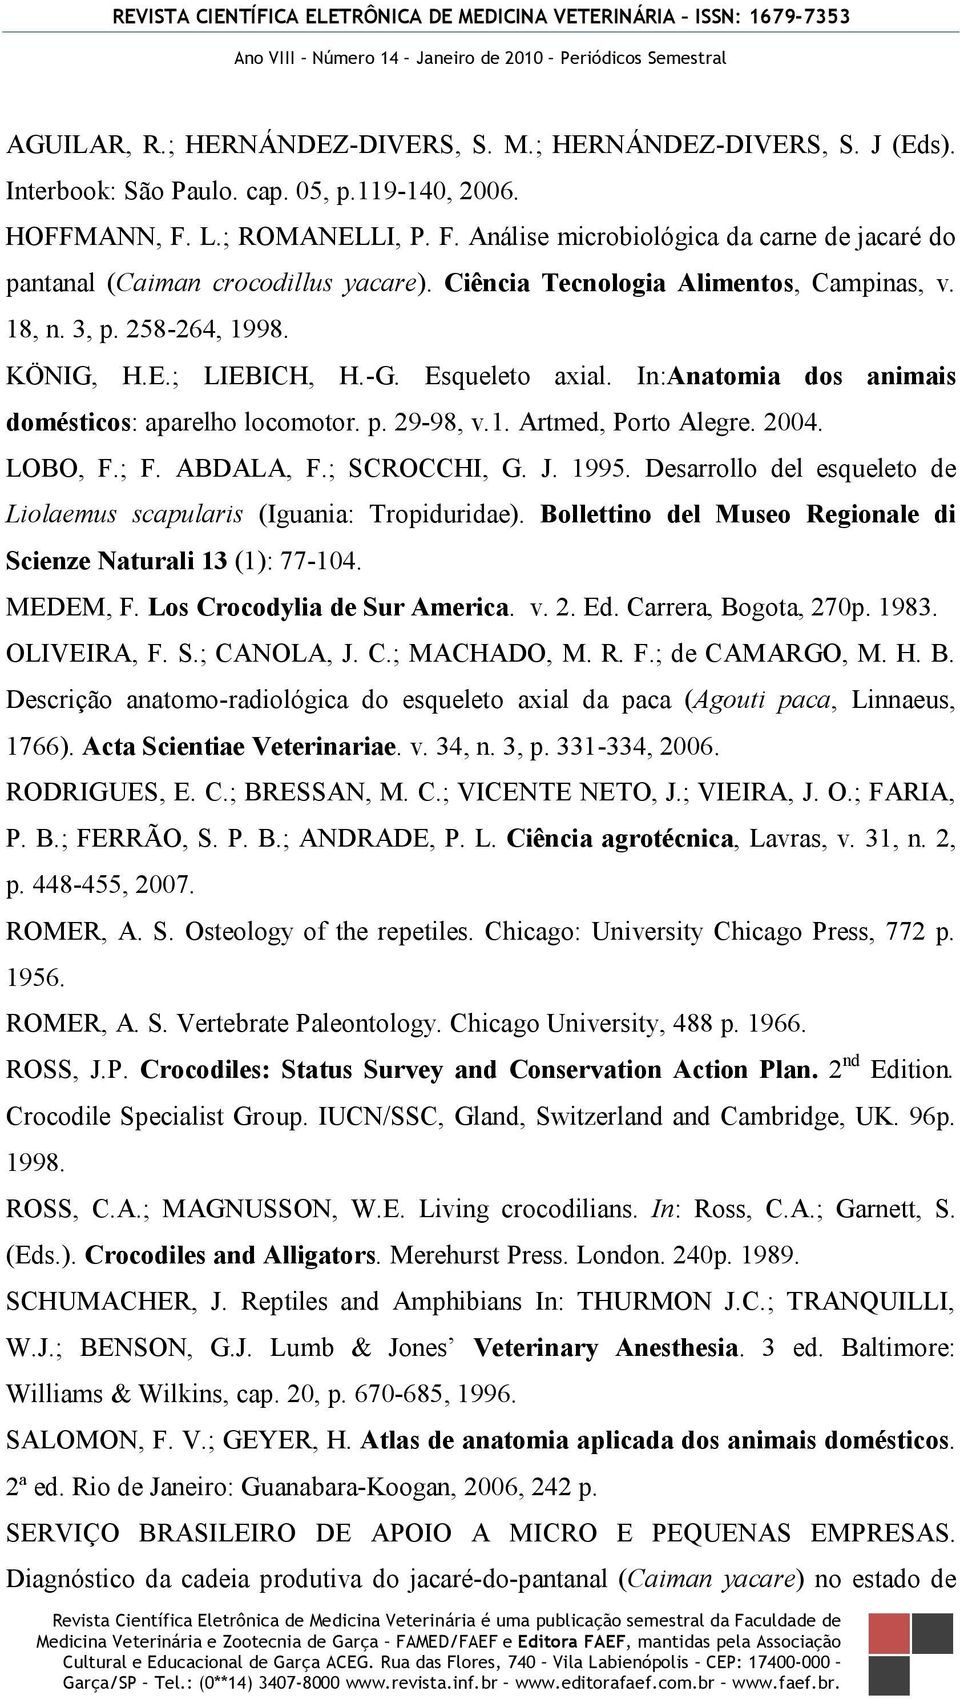 -G. Esqueleto axial. In:Anatomia dos animais domésticos: aparelho locomotor. p. 29-98, v.1. Artmed, Porto Alegre. 2004. LOBO, F.; F. ABDALA, F.; SCROCCHI, G. J. 1995.